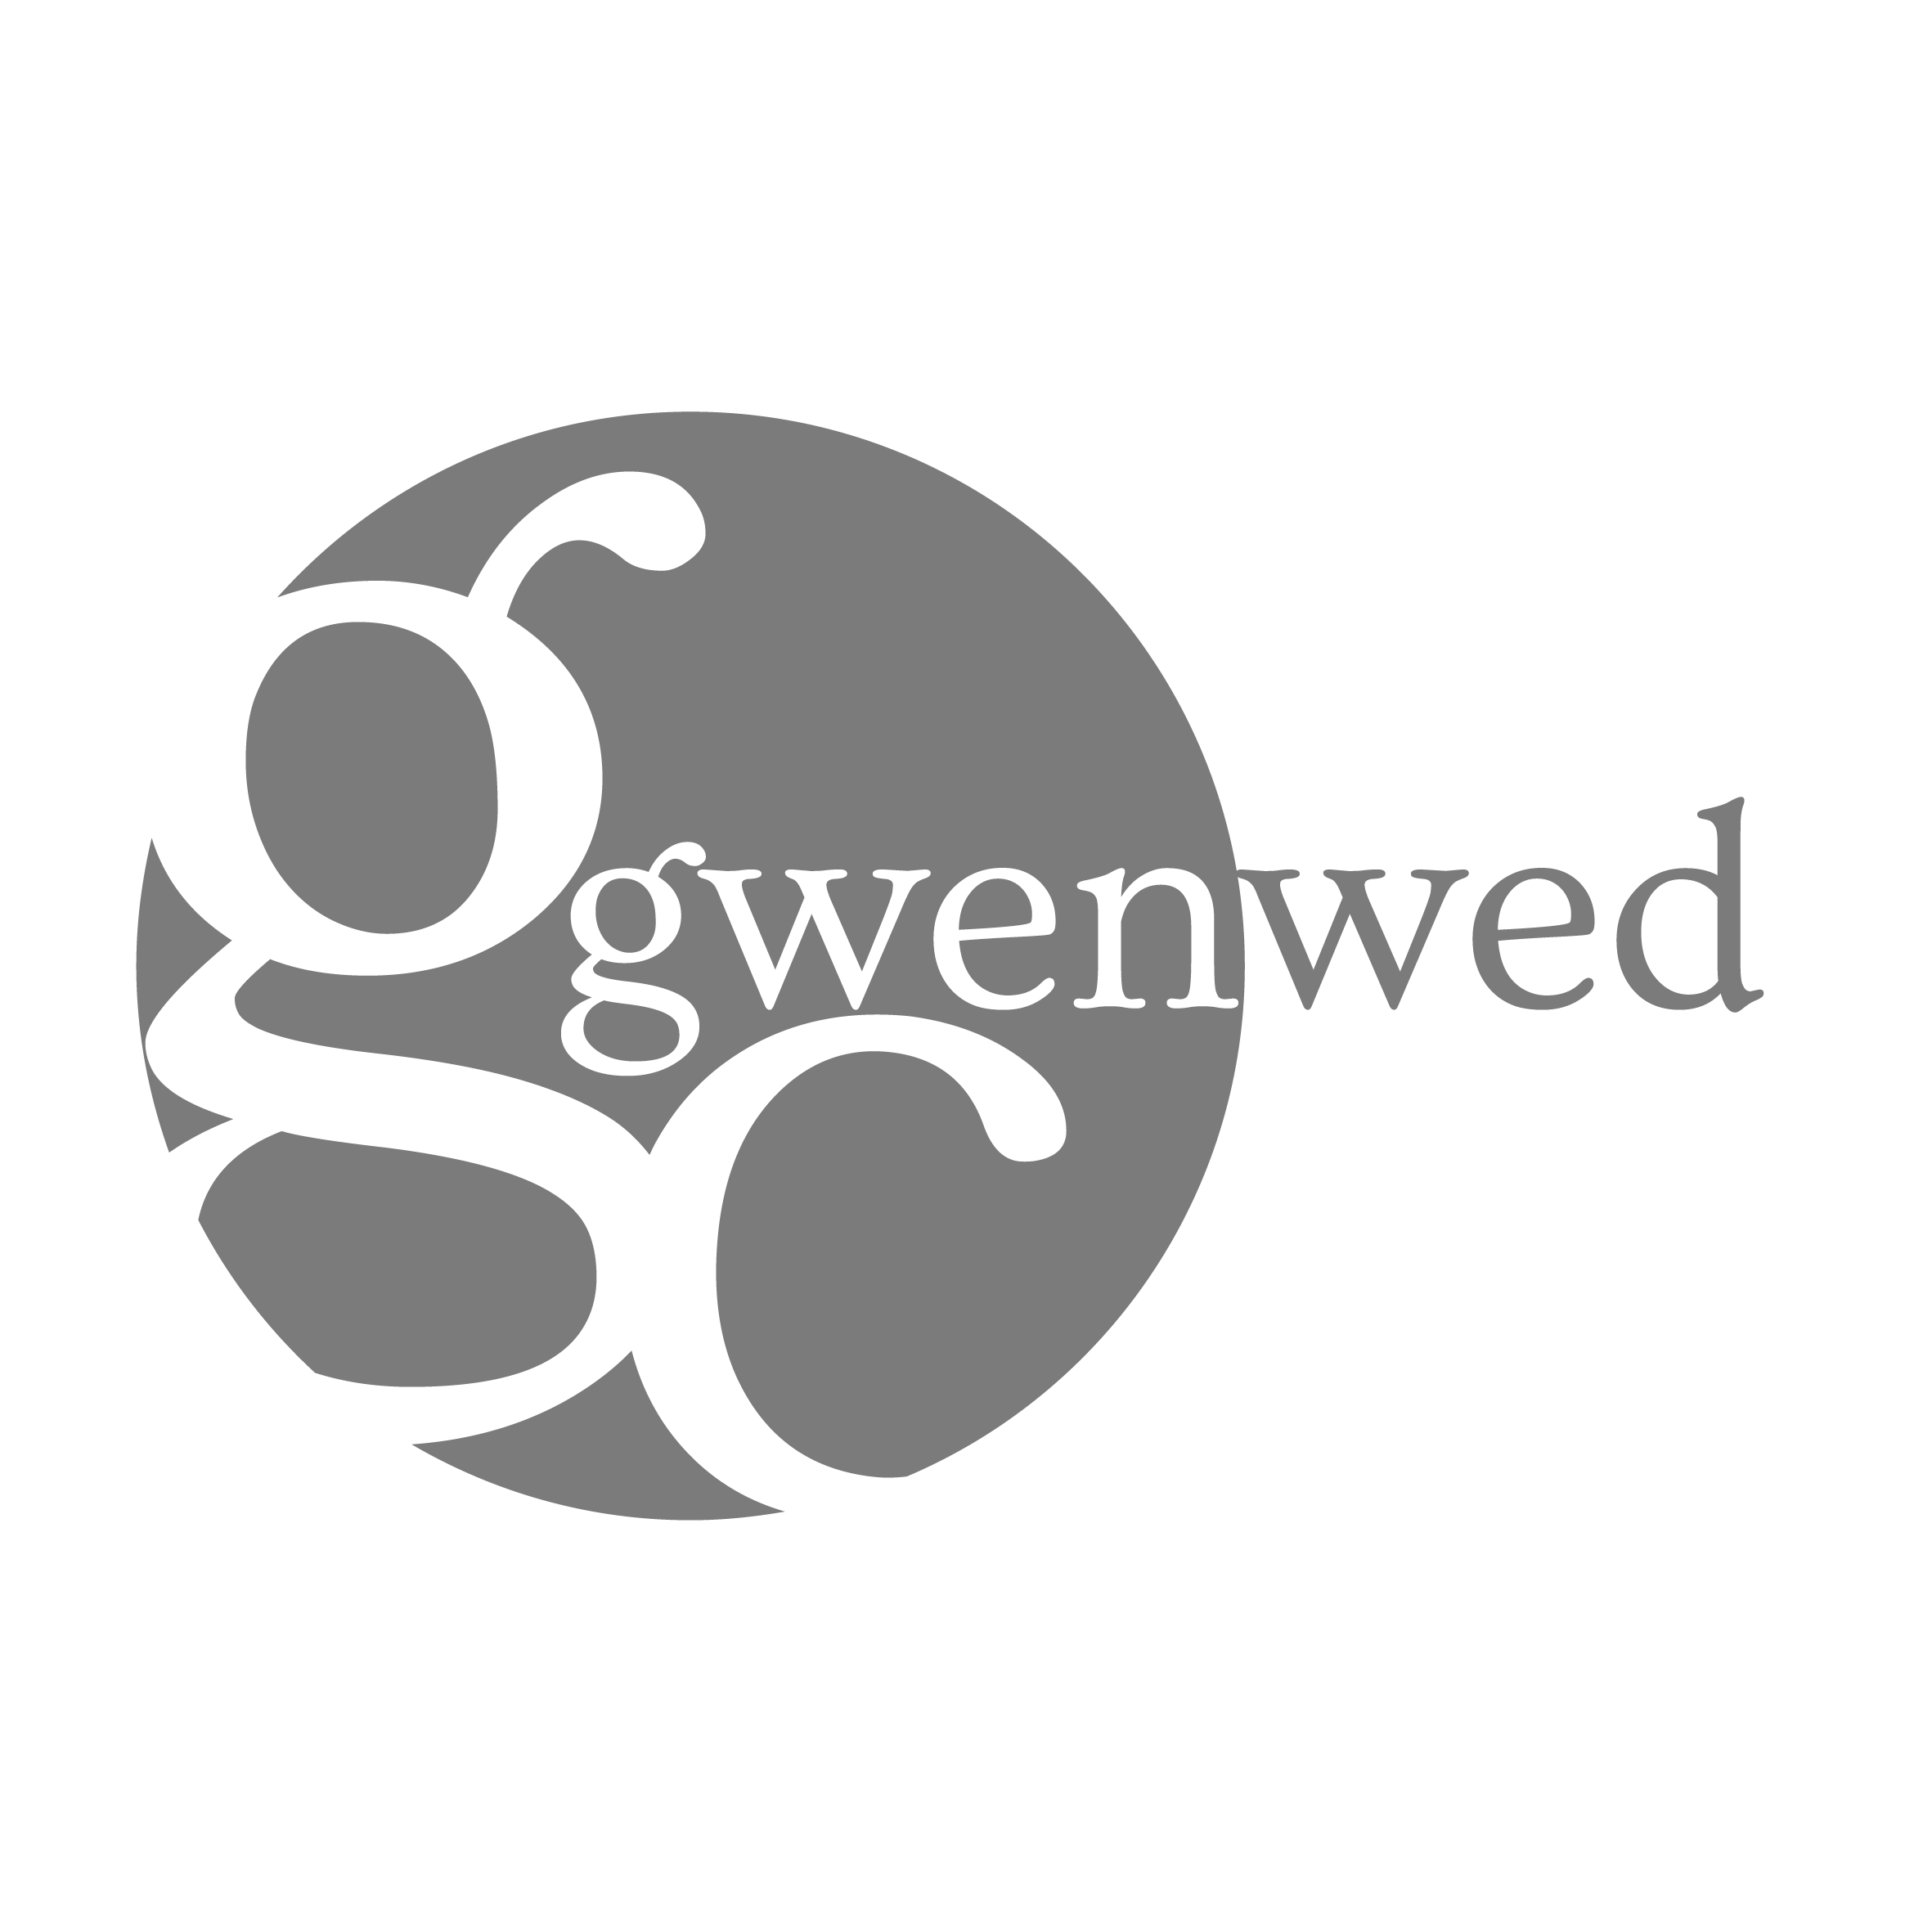 Gwenwed